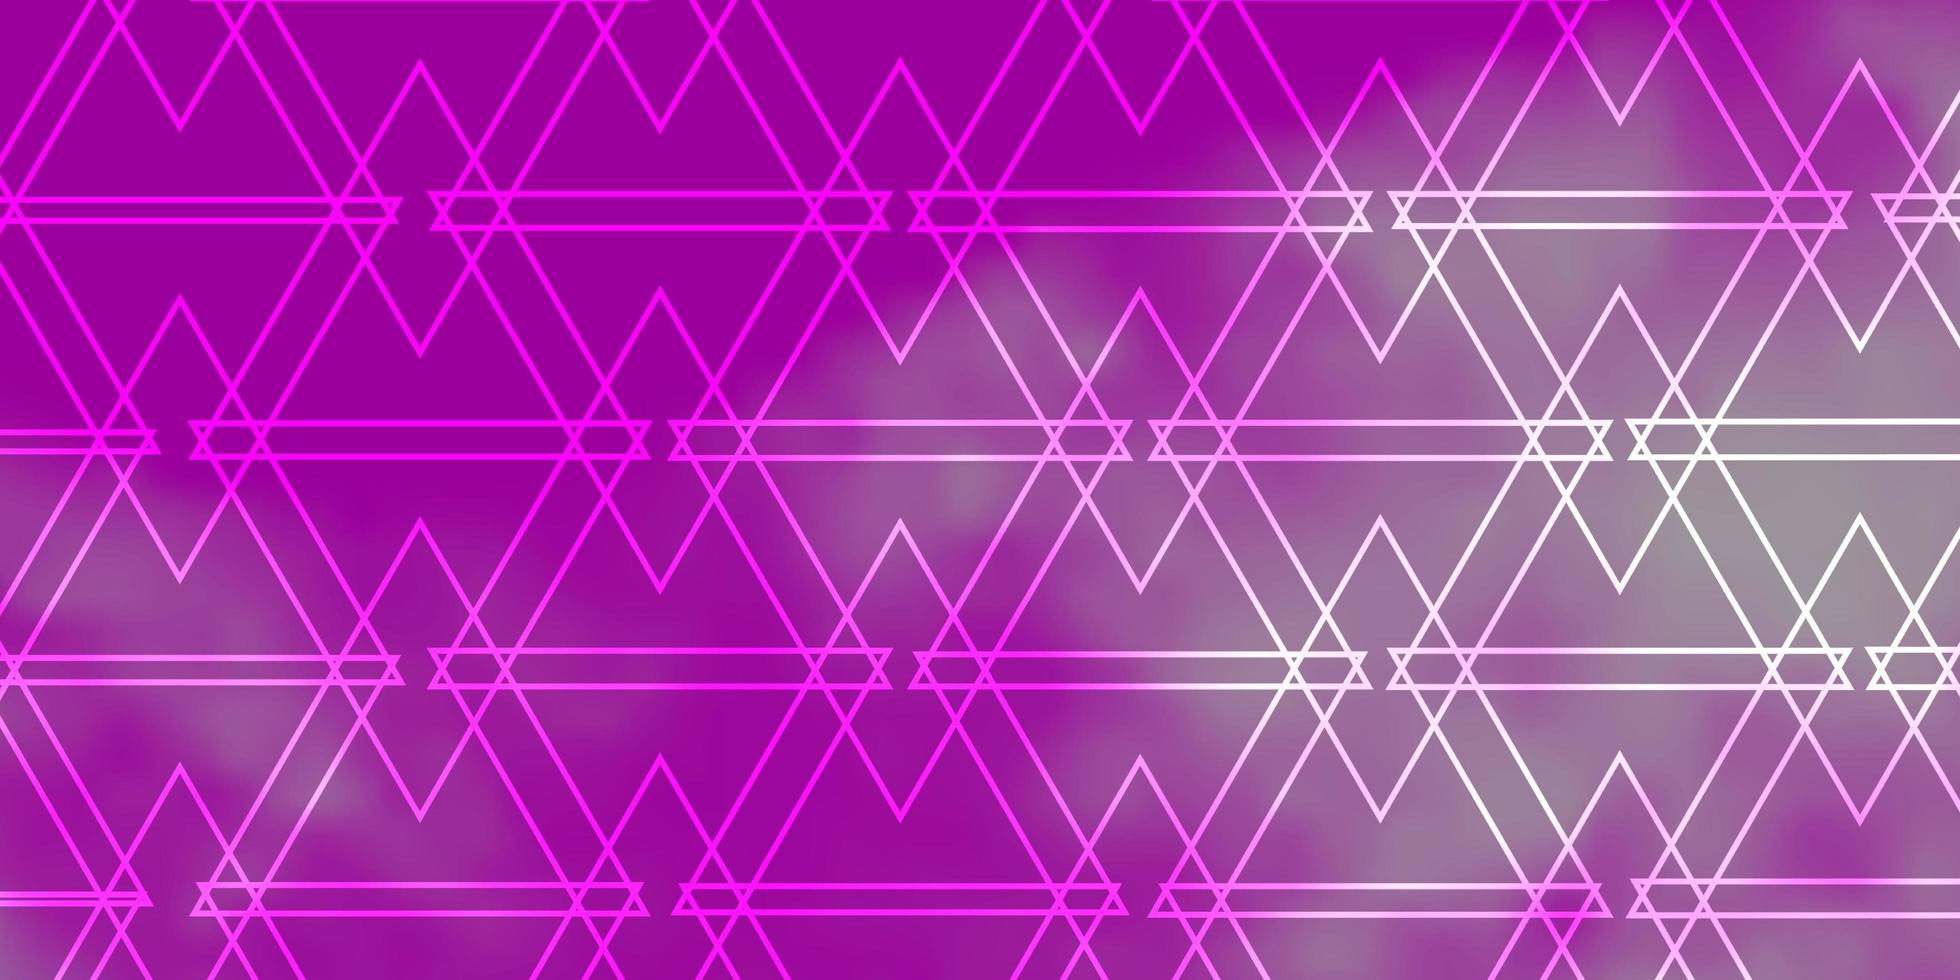 modelo de vetor rosa claro roxo com linhas, triângulos.